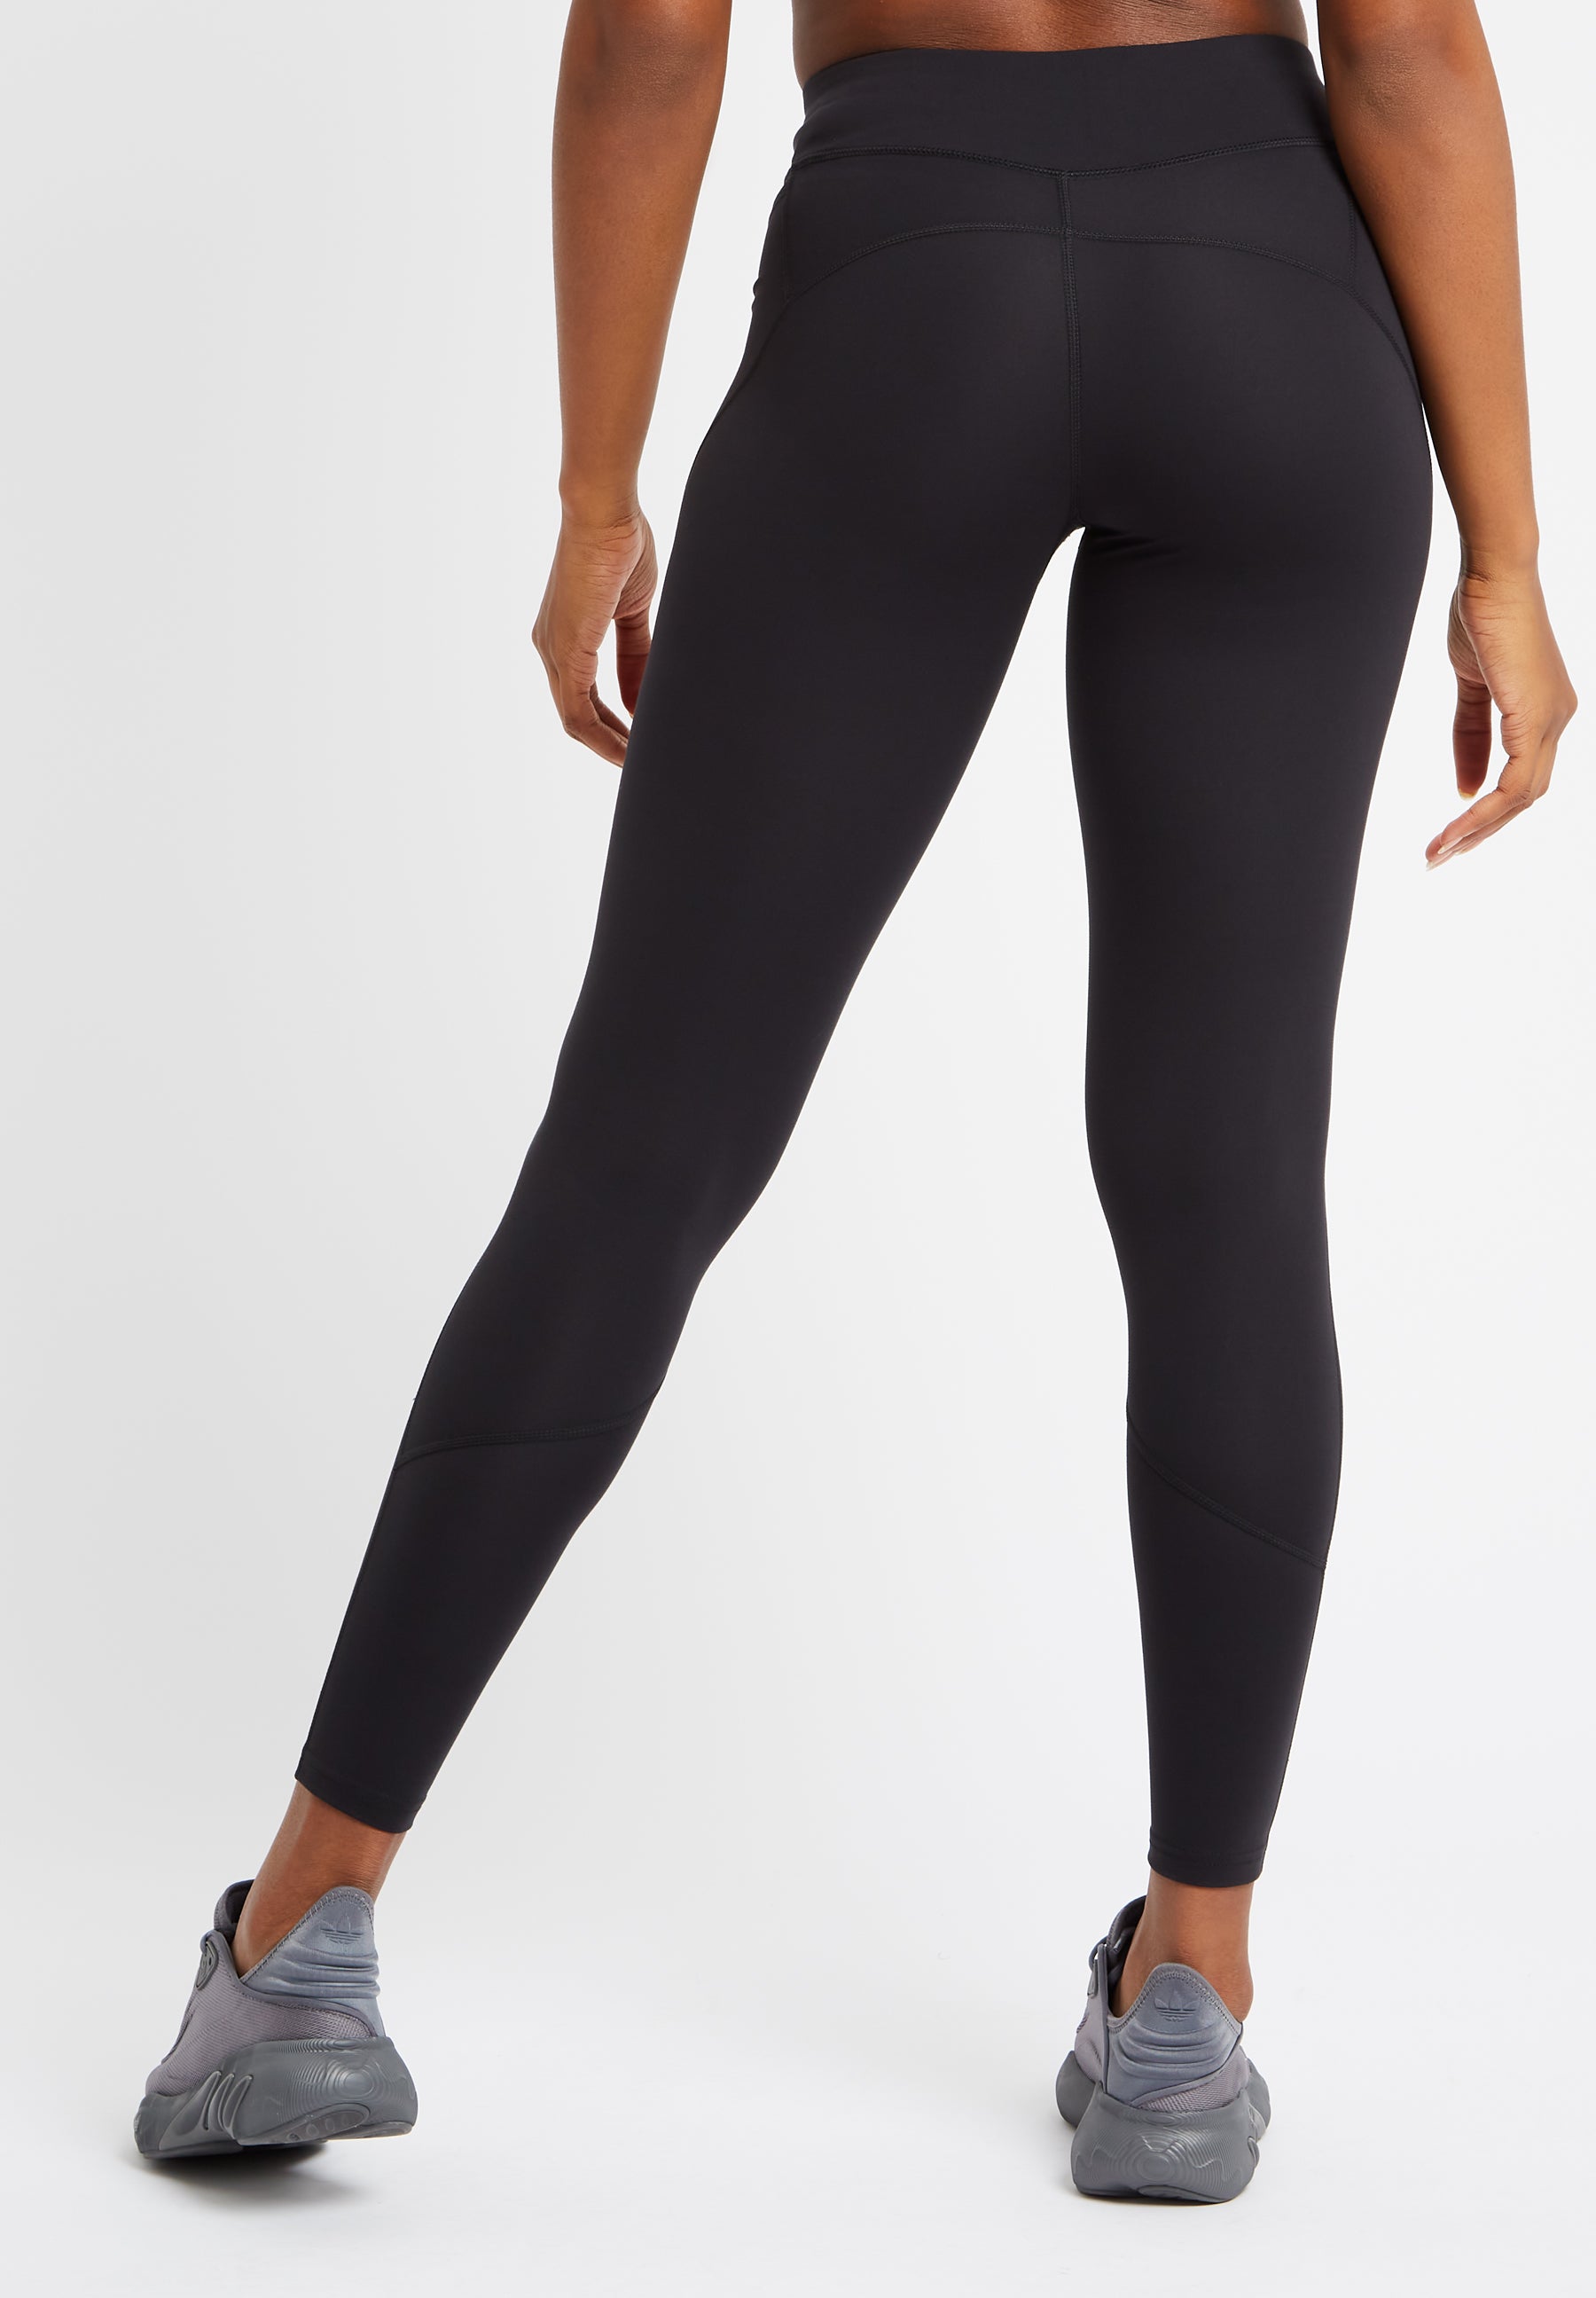 Women's High Waist Stretchy Skinny Sheer Mesh Insert Workout Leggings Yoga  Pants | eBay